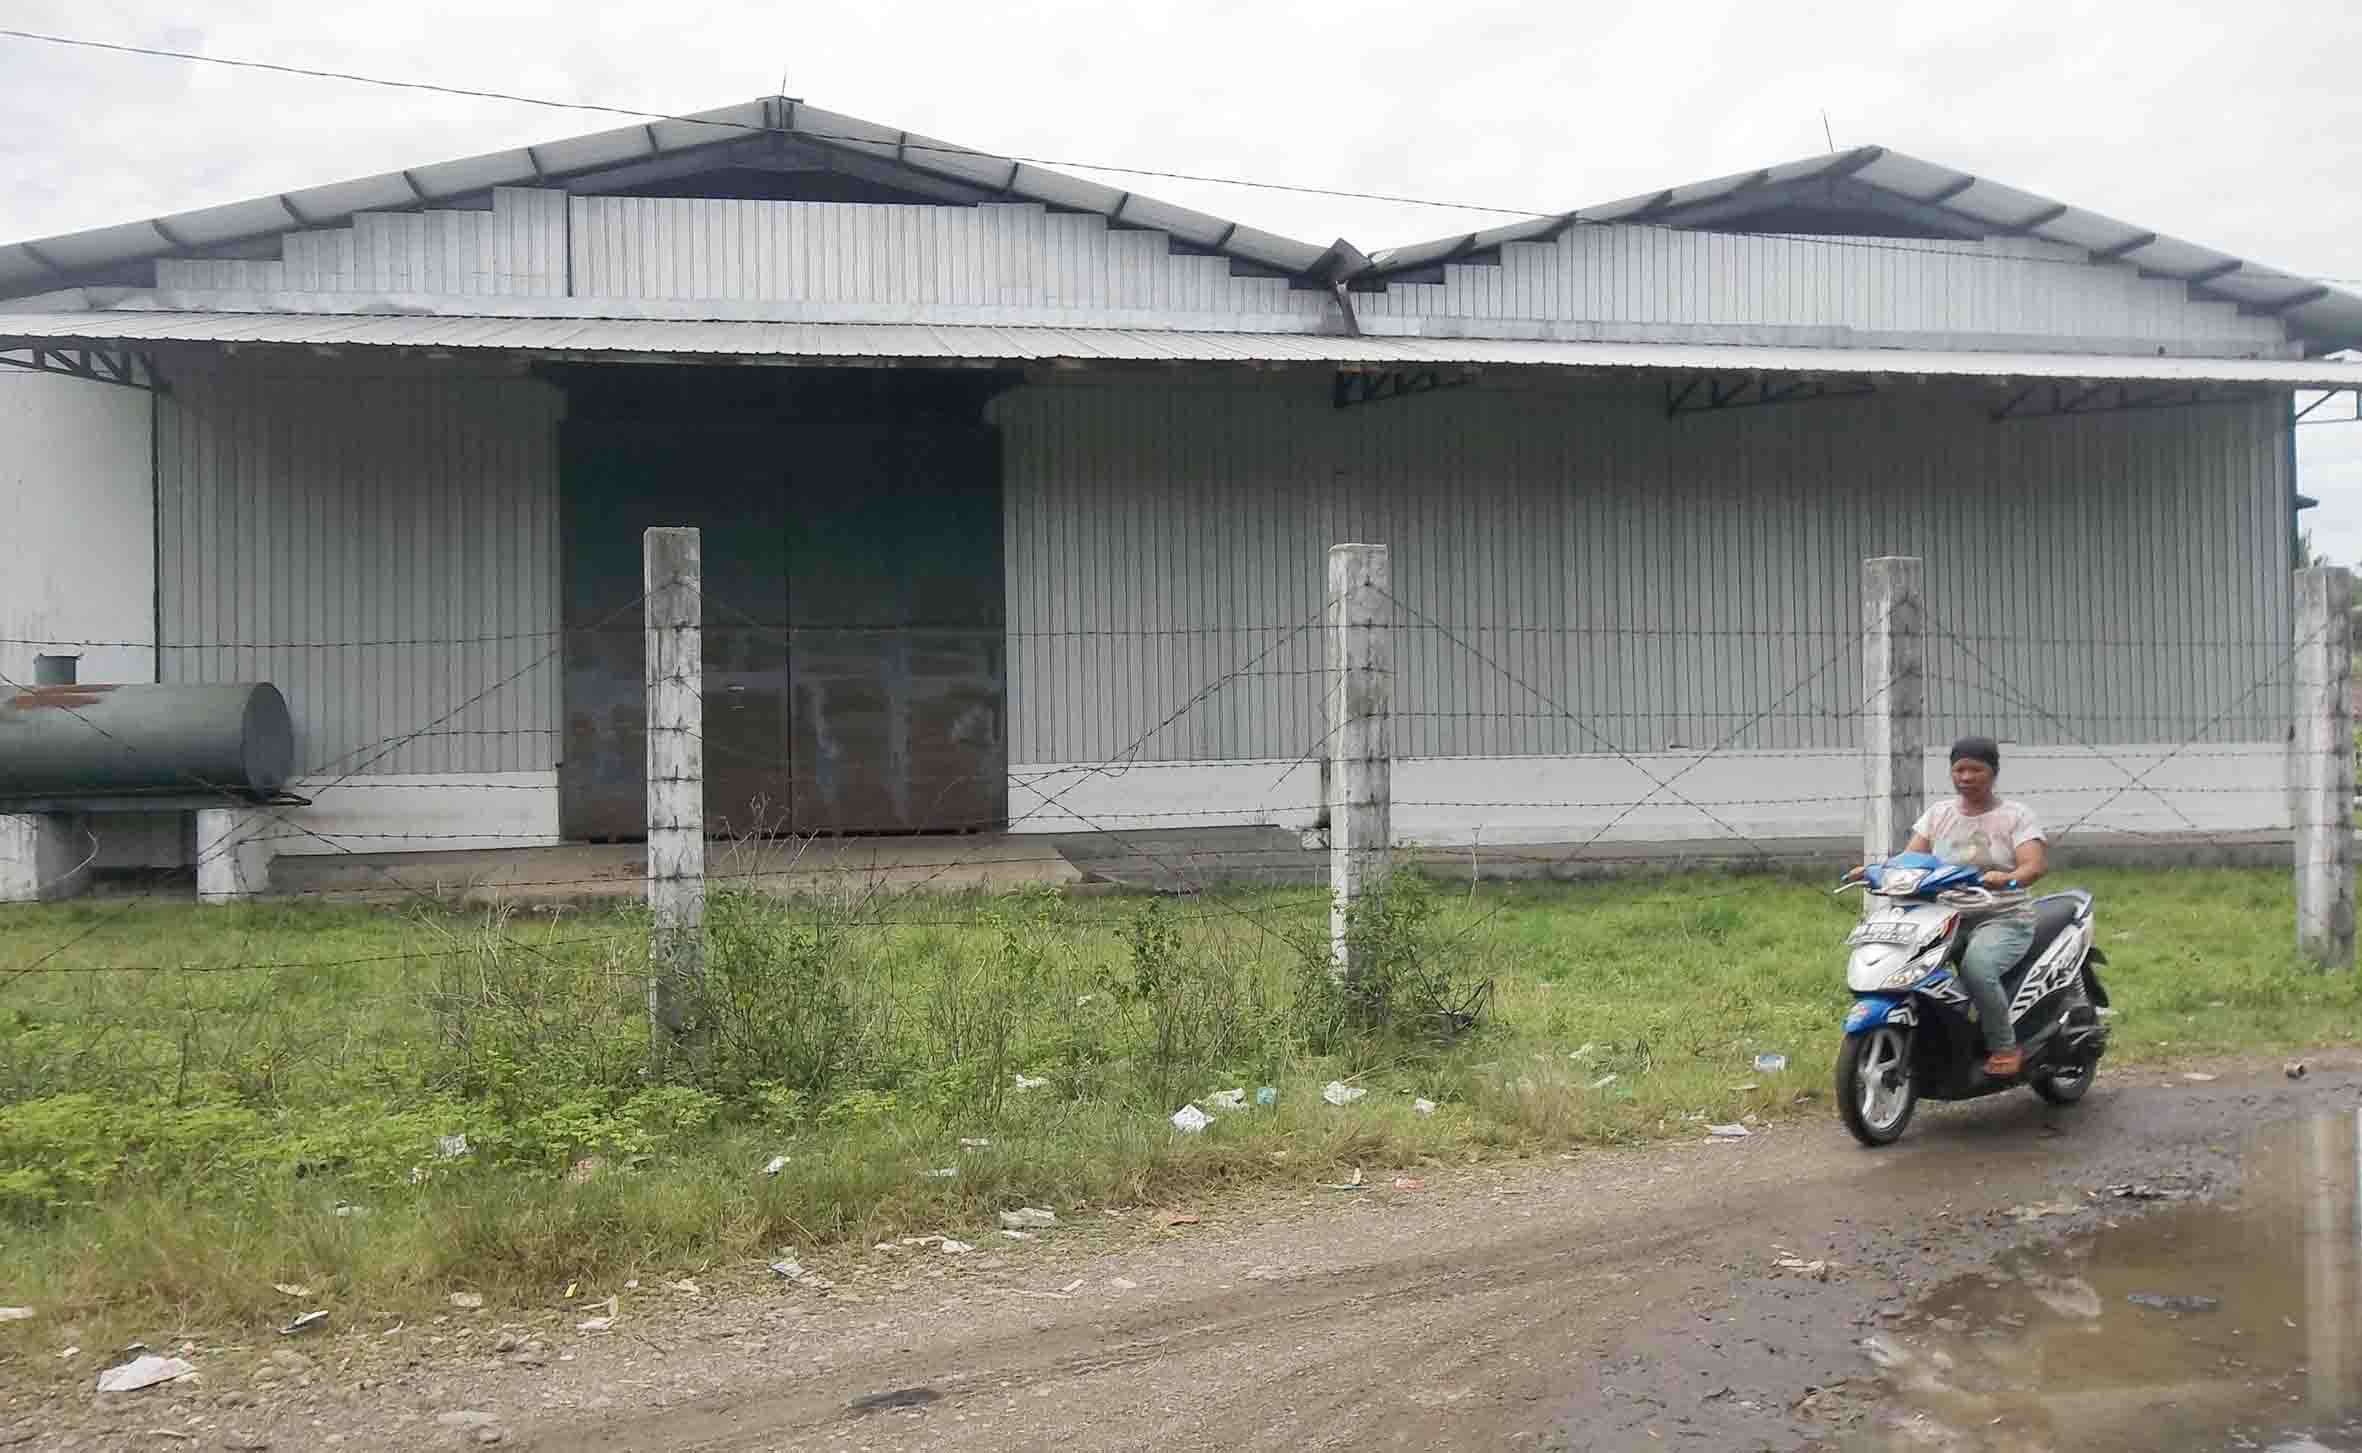 Rice Milling, Aset Daerah Milliaran Rupiah Mubazir